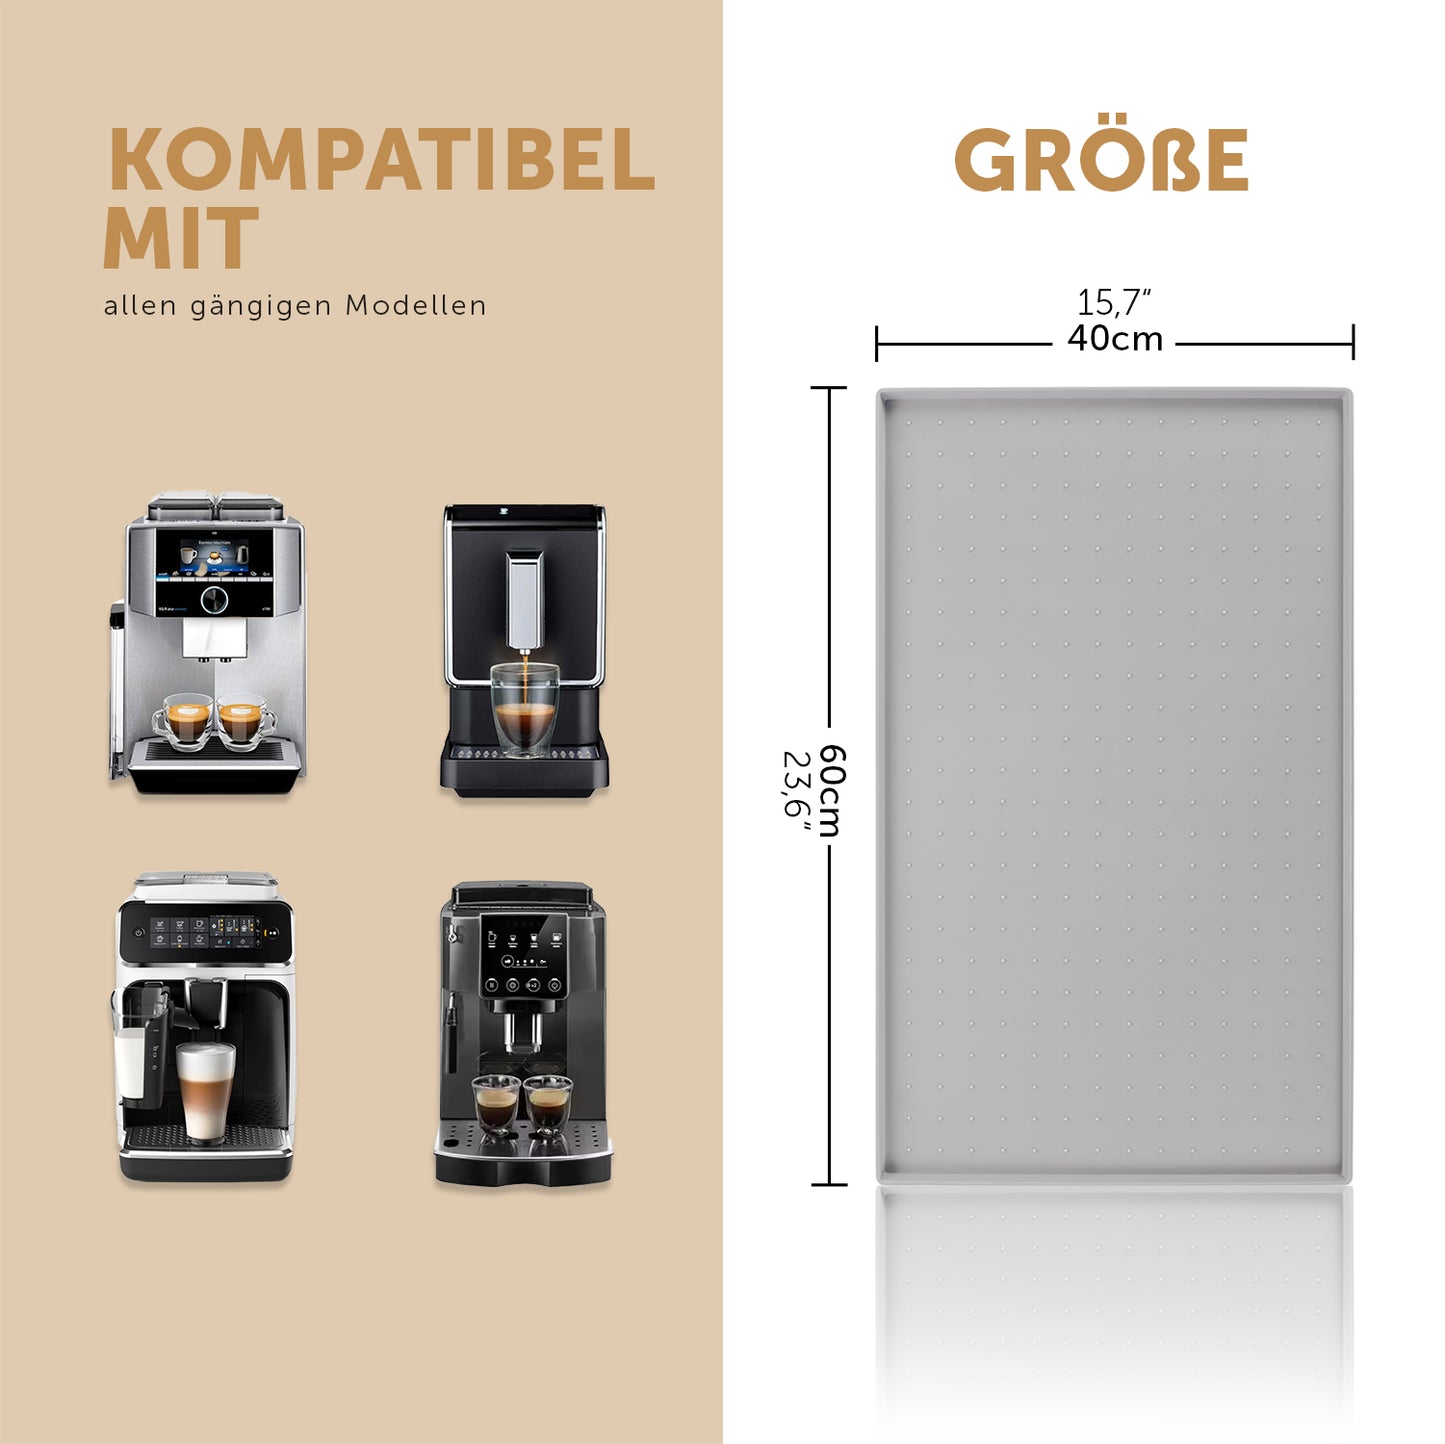 Verschiedene Kaffeemaschinenmodelle aufgelistet die mit der Unterlage kompatibel sind sowie Größenangaben der Unterlage